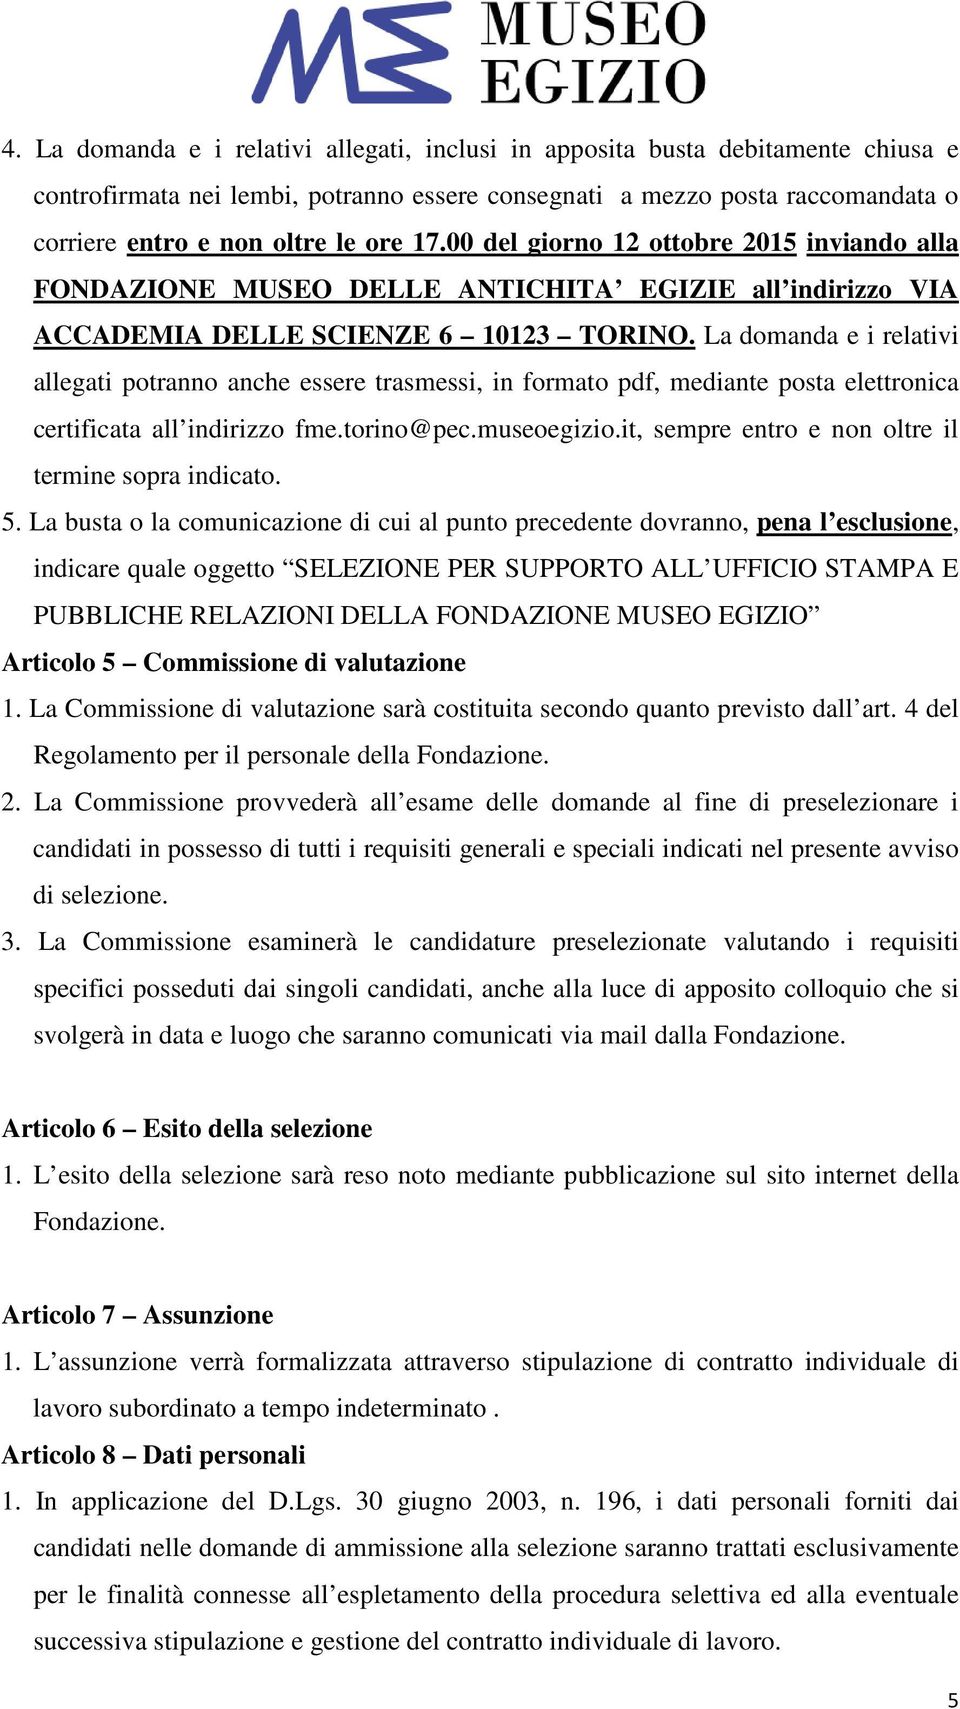 La domanda e i relativi allegati potranno anche essere trasmessi, in formato pdf, mediante posta elettronica certificata all indirizzo fme.torino@pec.museoegizio.